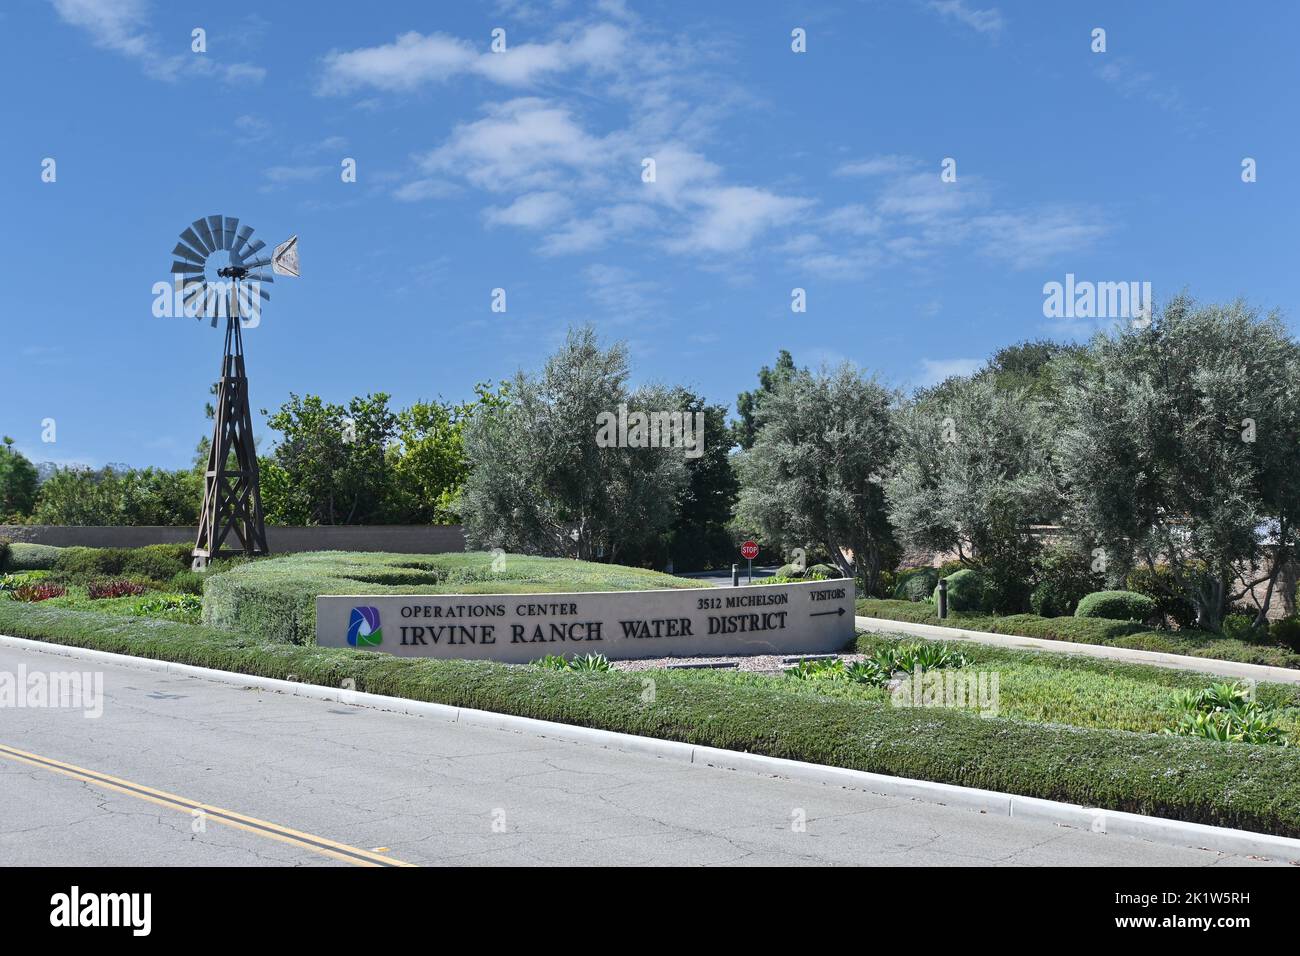 IRVINE, KALIFORNIEN - 09. SEPTEMBER 2022: Windmühle und Schild für das Irvine Ranch Water District Operations Center. Stockfoto